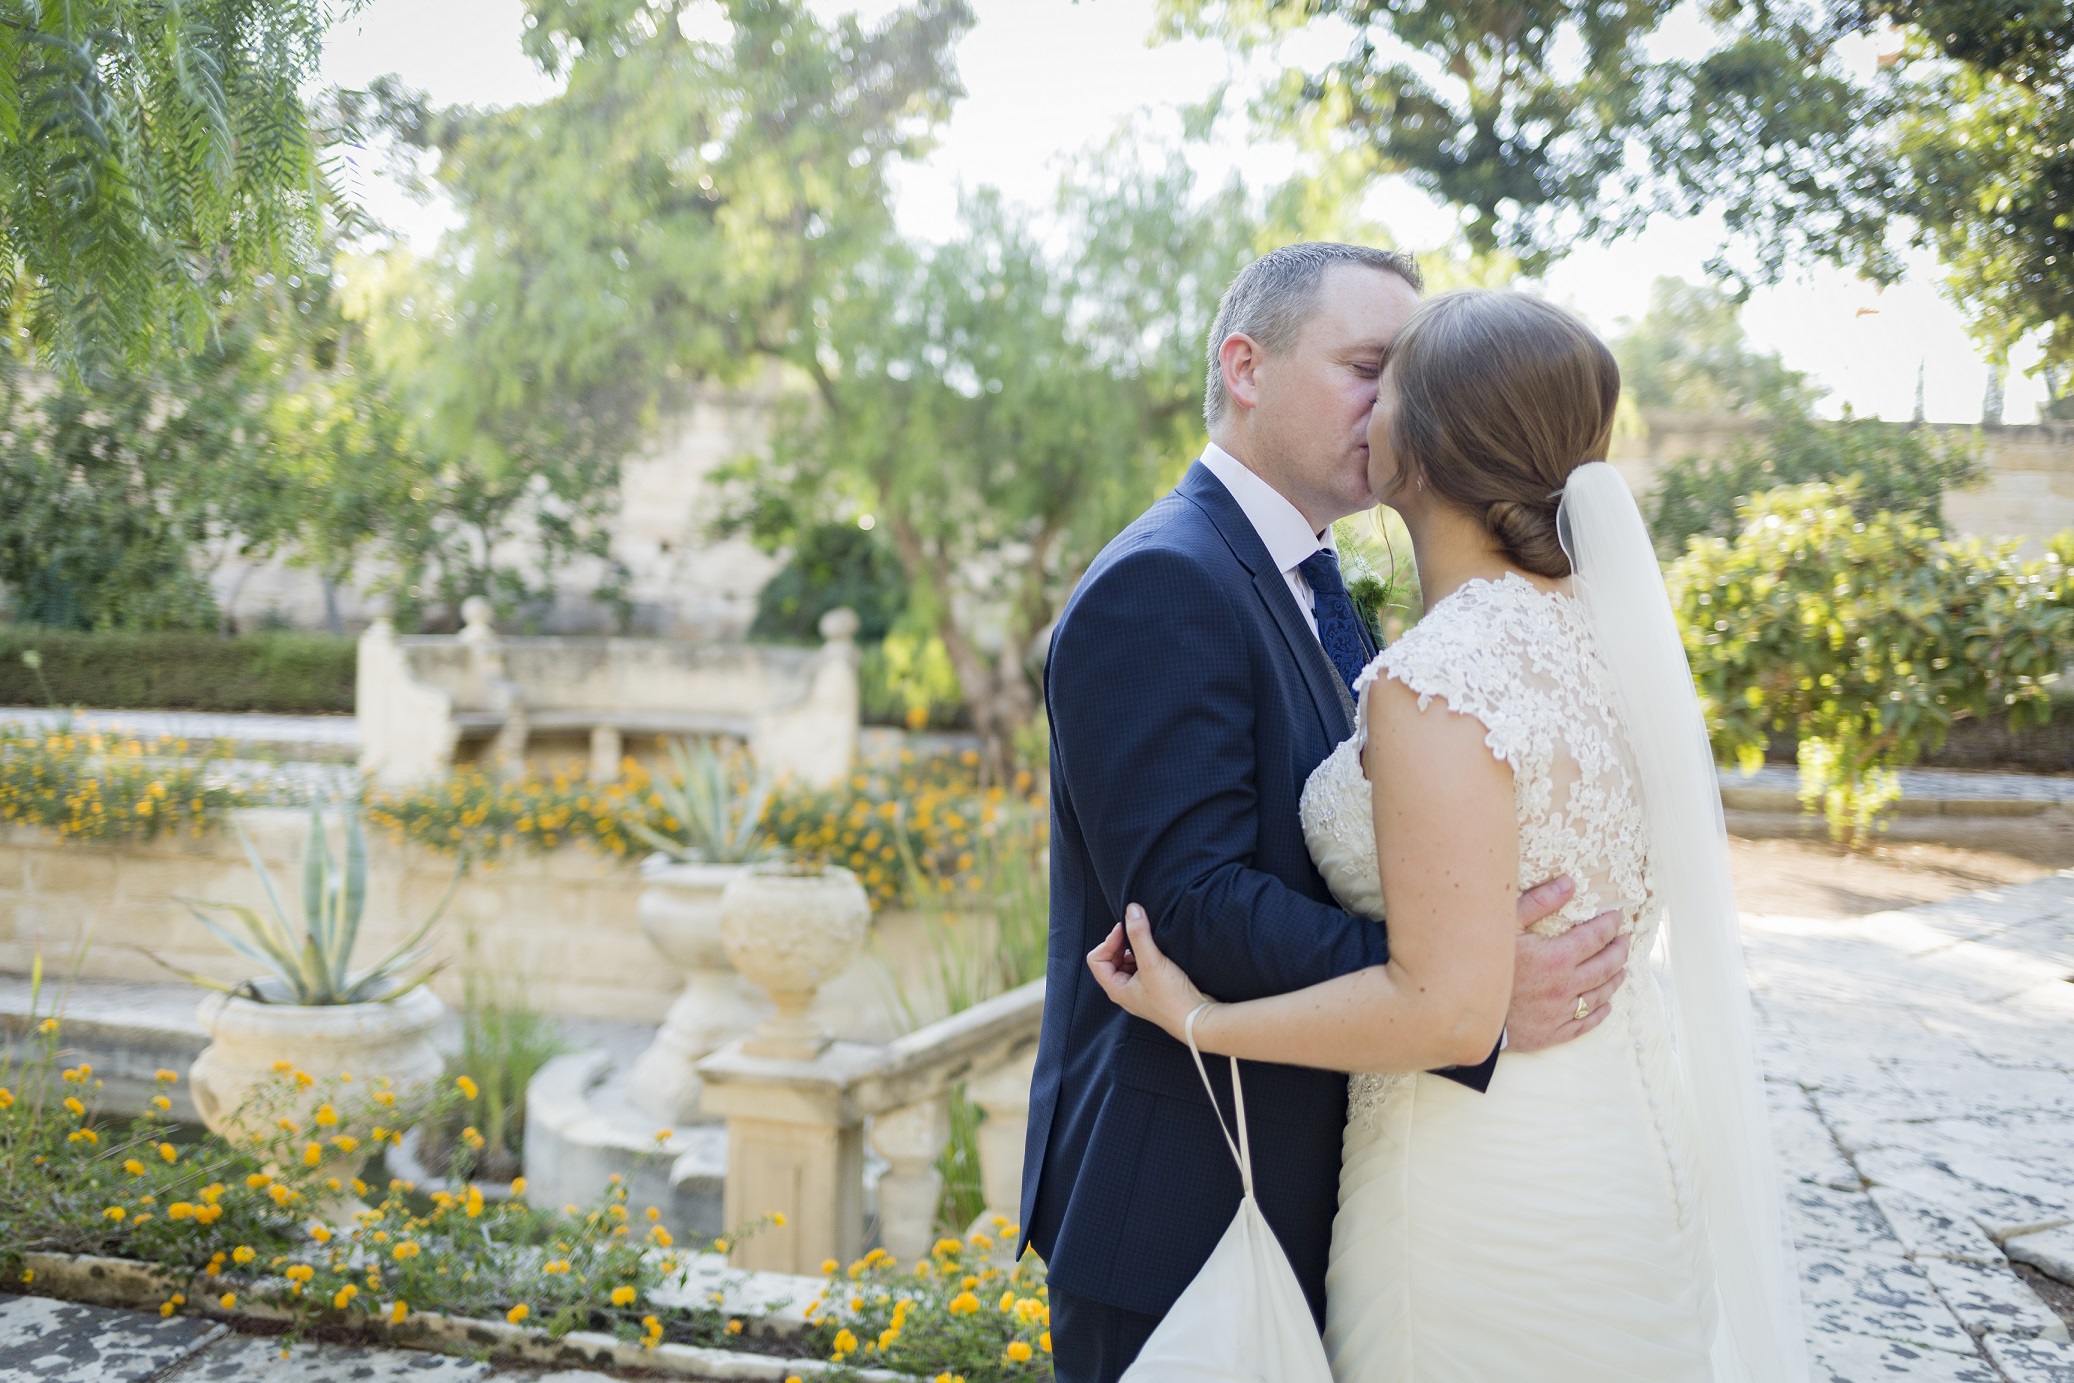 Wed in Malta Wedding at Villa Bologna